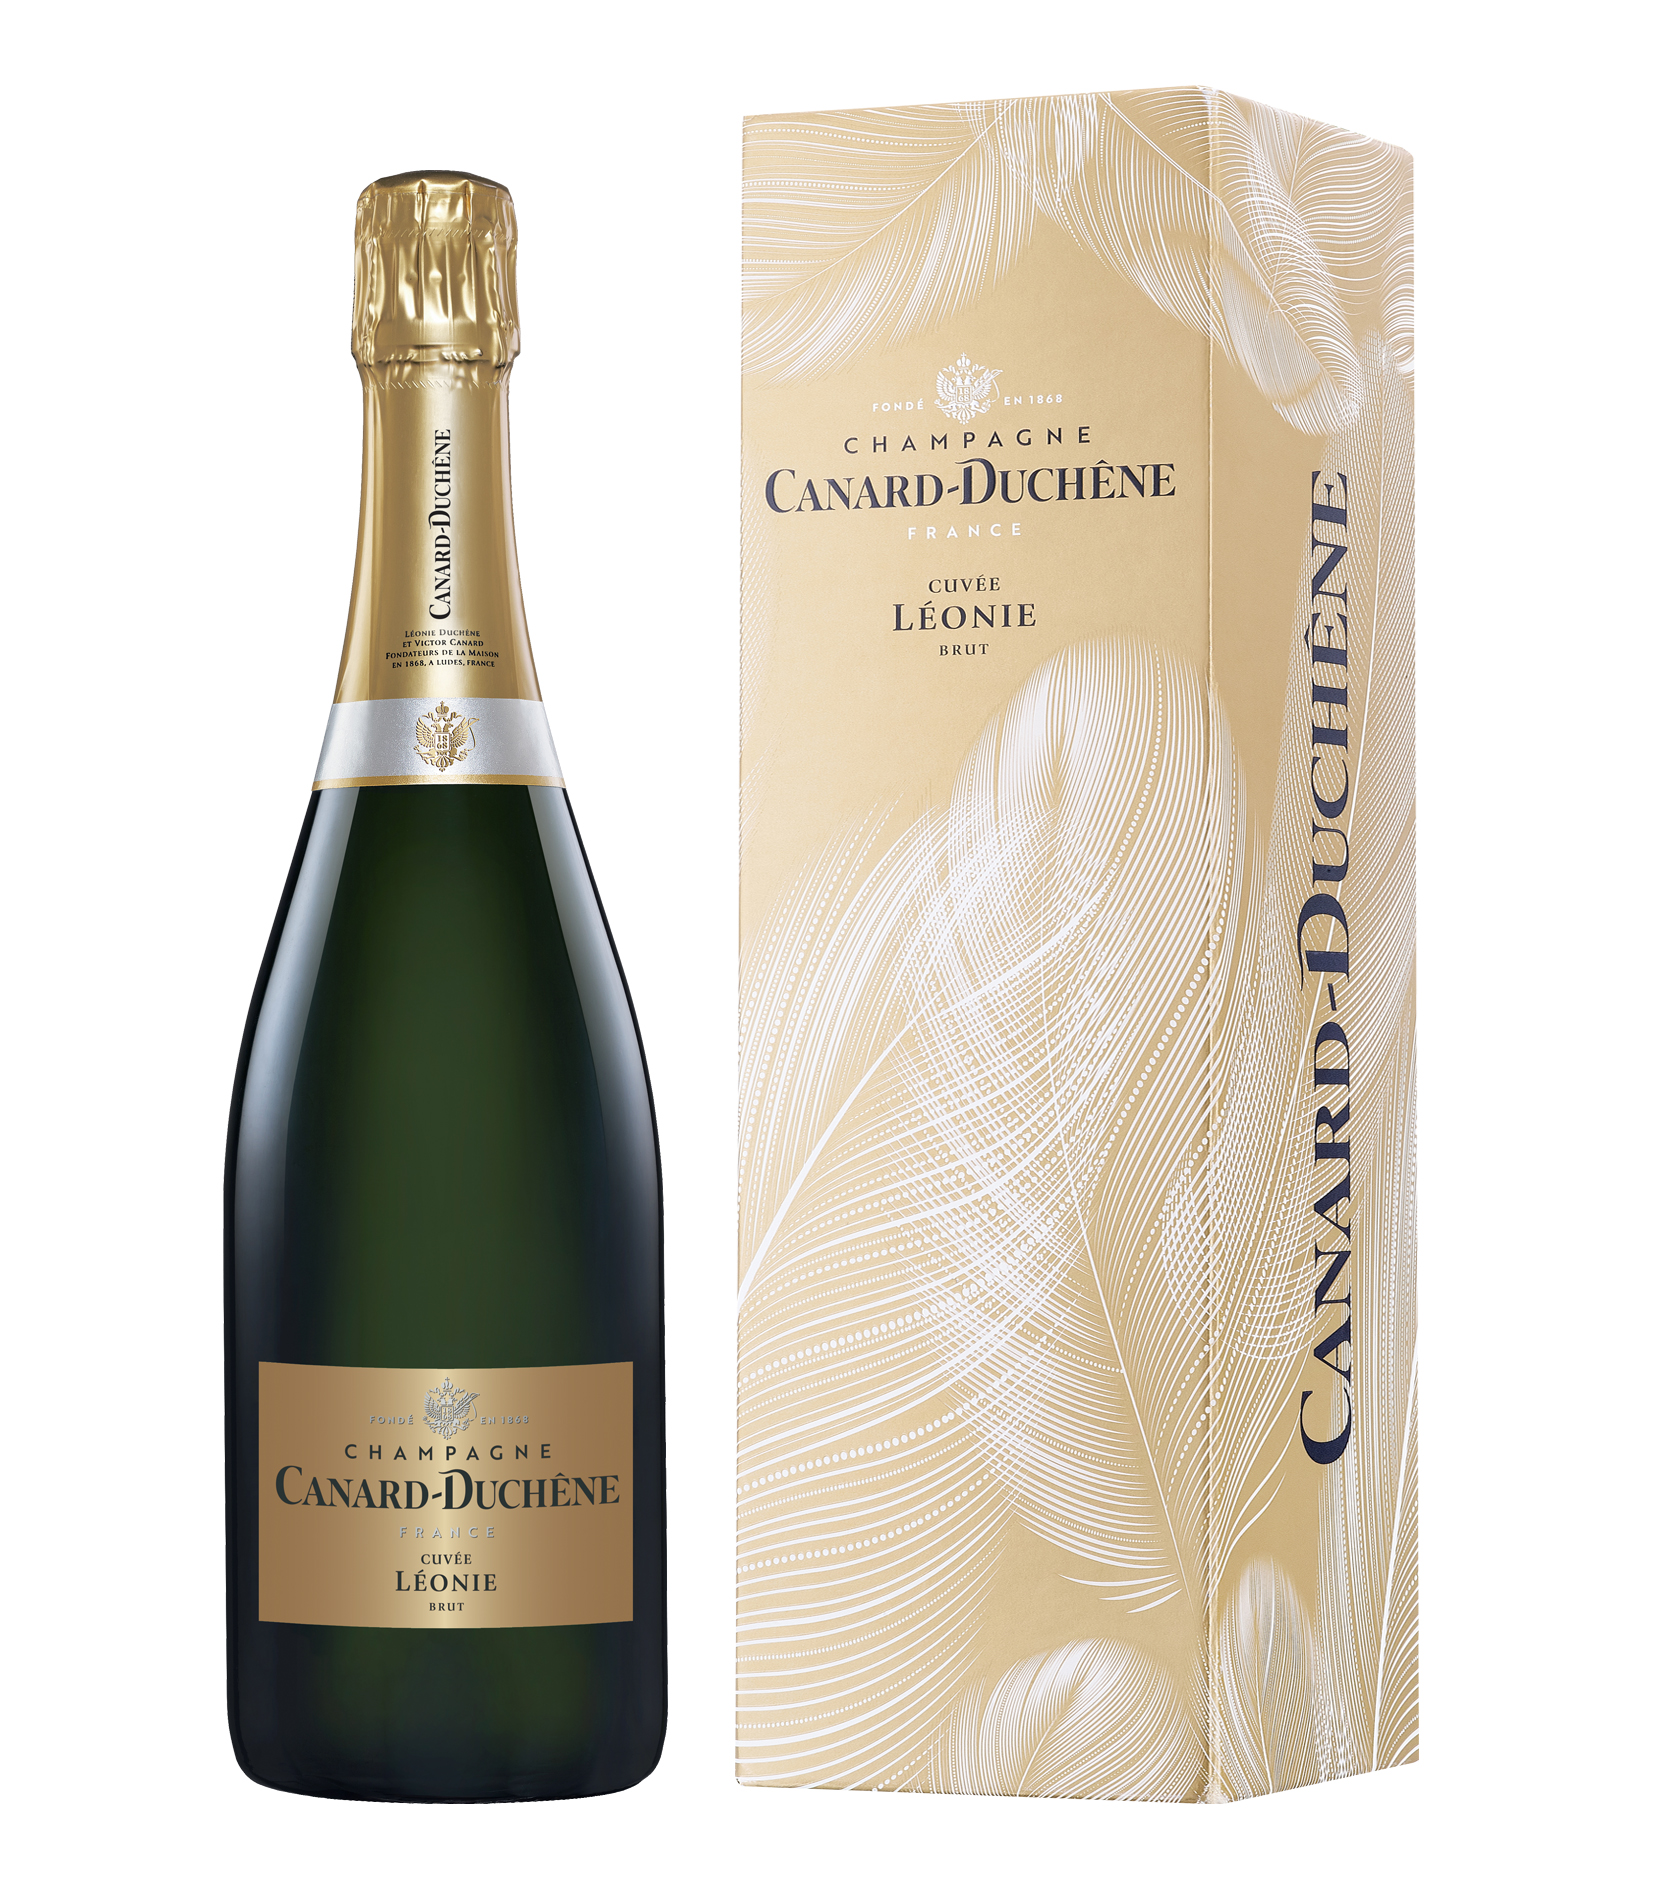 Maison champagne. Шампанское canard-Duchene Cuvee Leonie Brut, 0.375 л. Шампанское canard-Duchene 3л. Canard-Duchene Cuvee Leonie Brut. Шампанское Chanoine freres Brut.